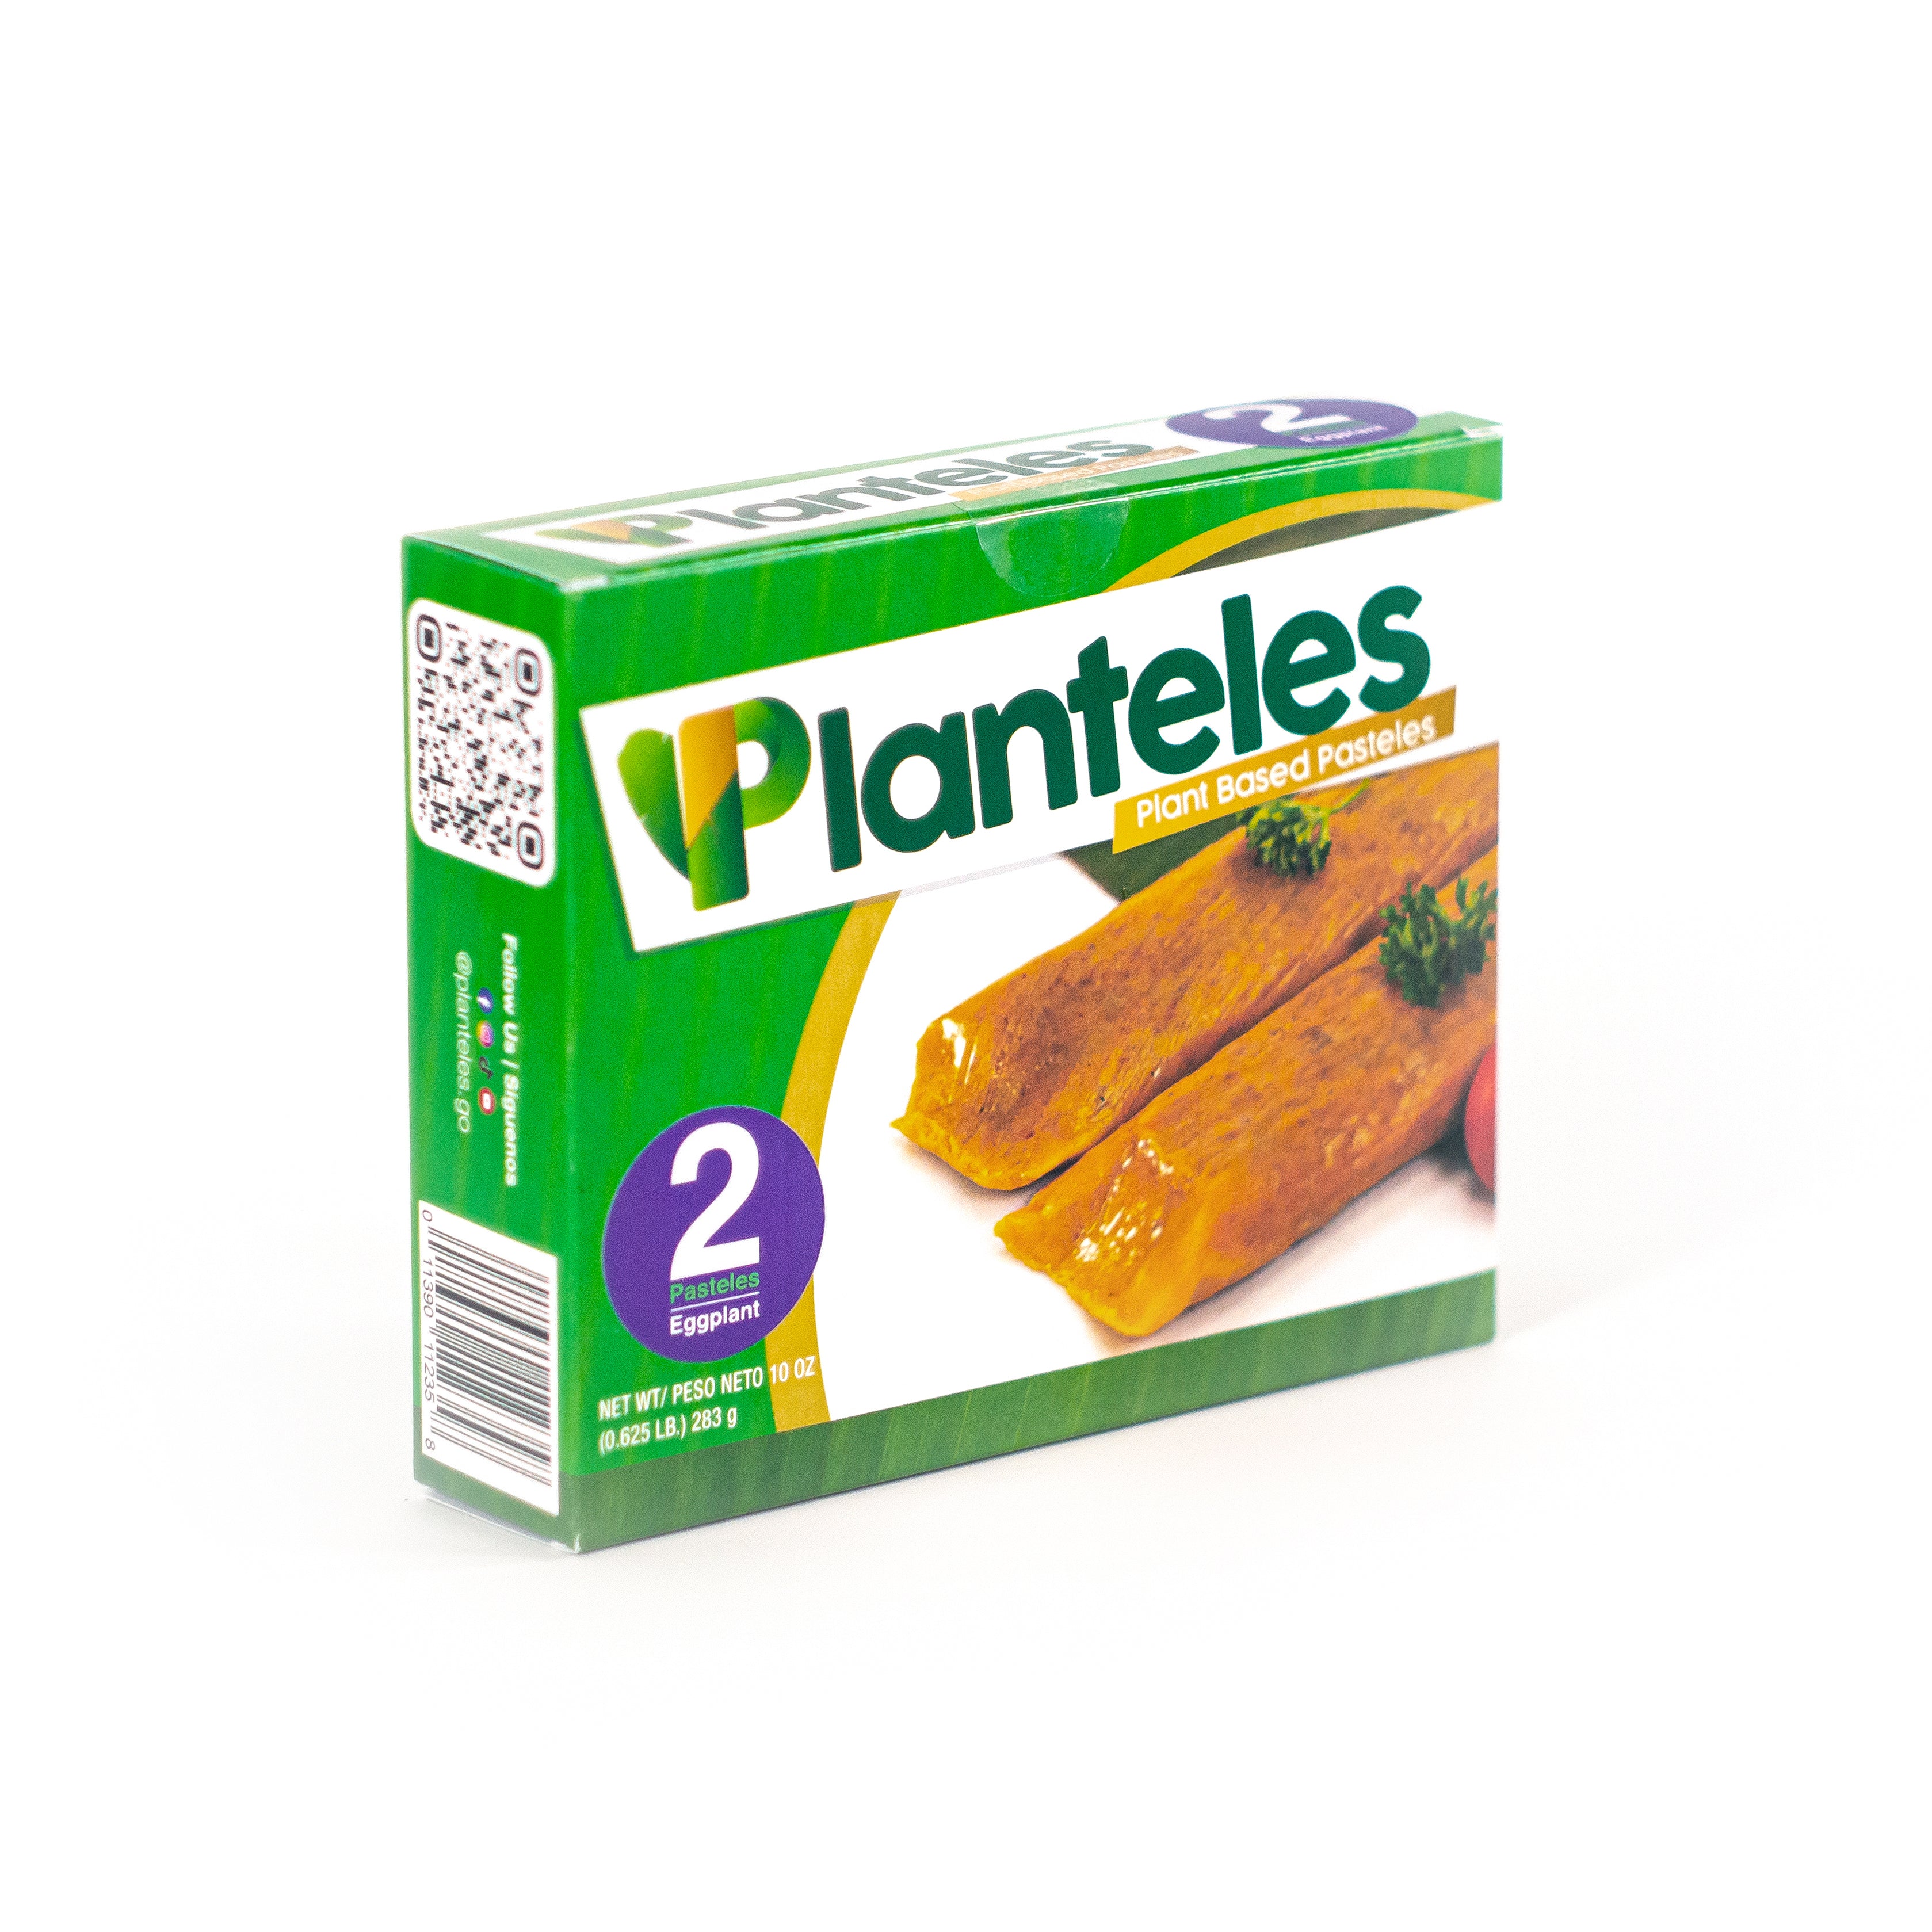 Mixed - 3 Packages- Planteles Plant-Based - Pasteles en Hoja - www.planteles.shop